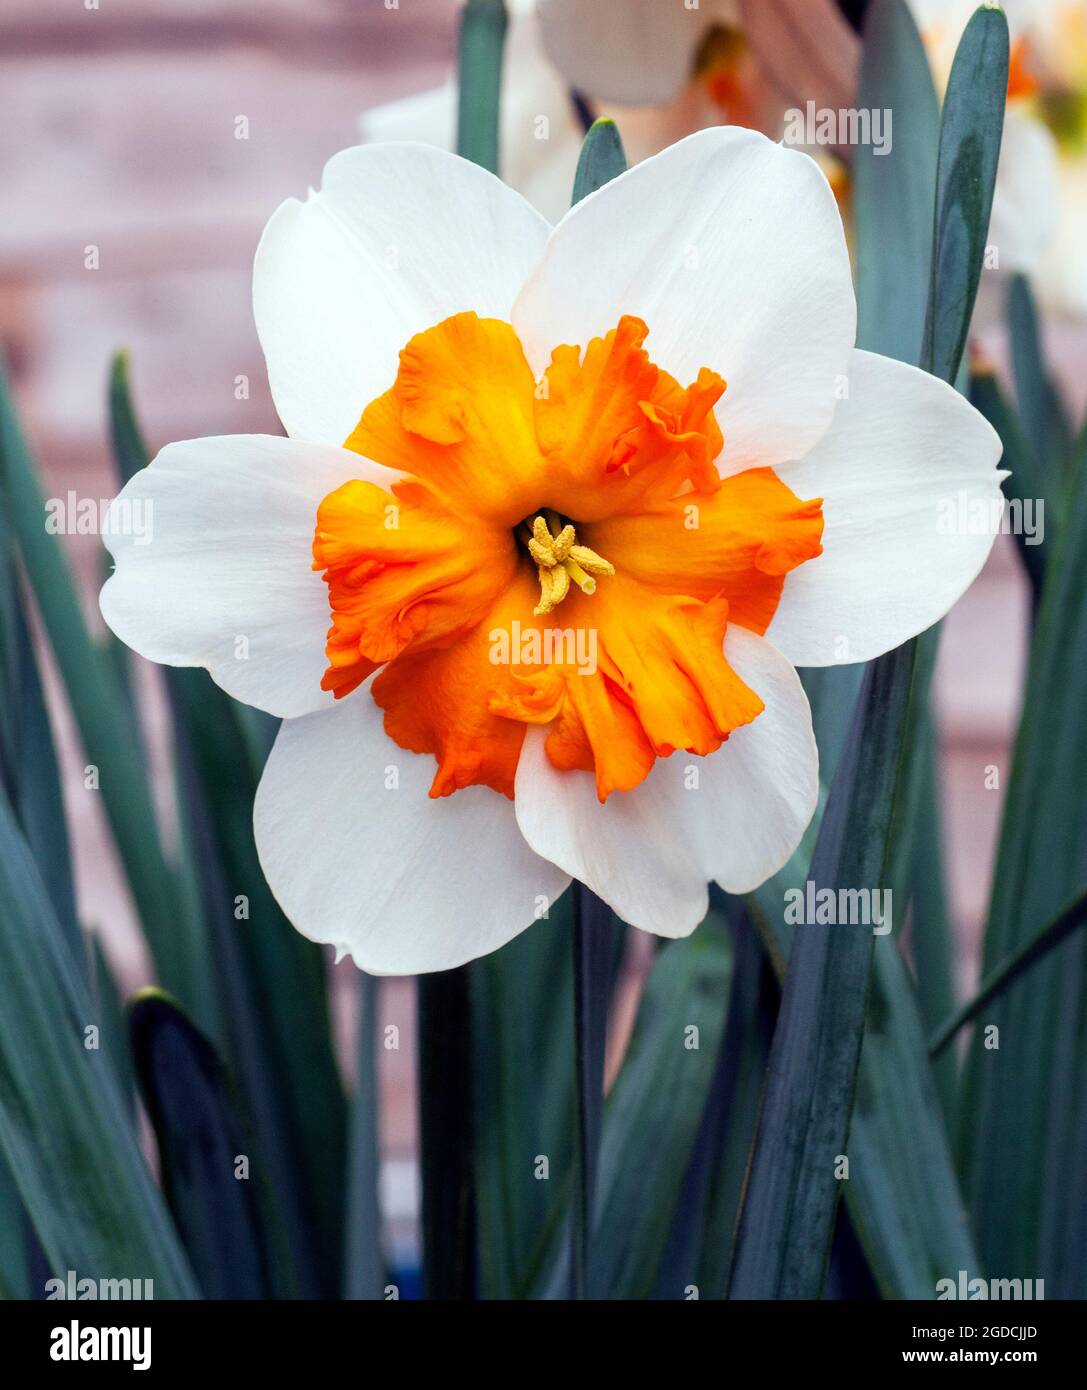 Primo piano dettaglio dell'Orangerie di Narcissus in fiore in primavera. Narcisi Orangerie è una divisione 11a corona daffodil con fiori bianchi e arancioni. Foto Stock